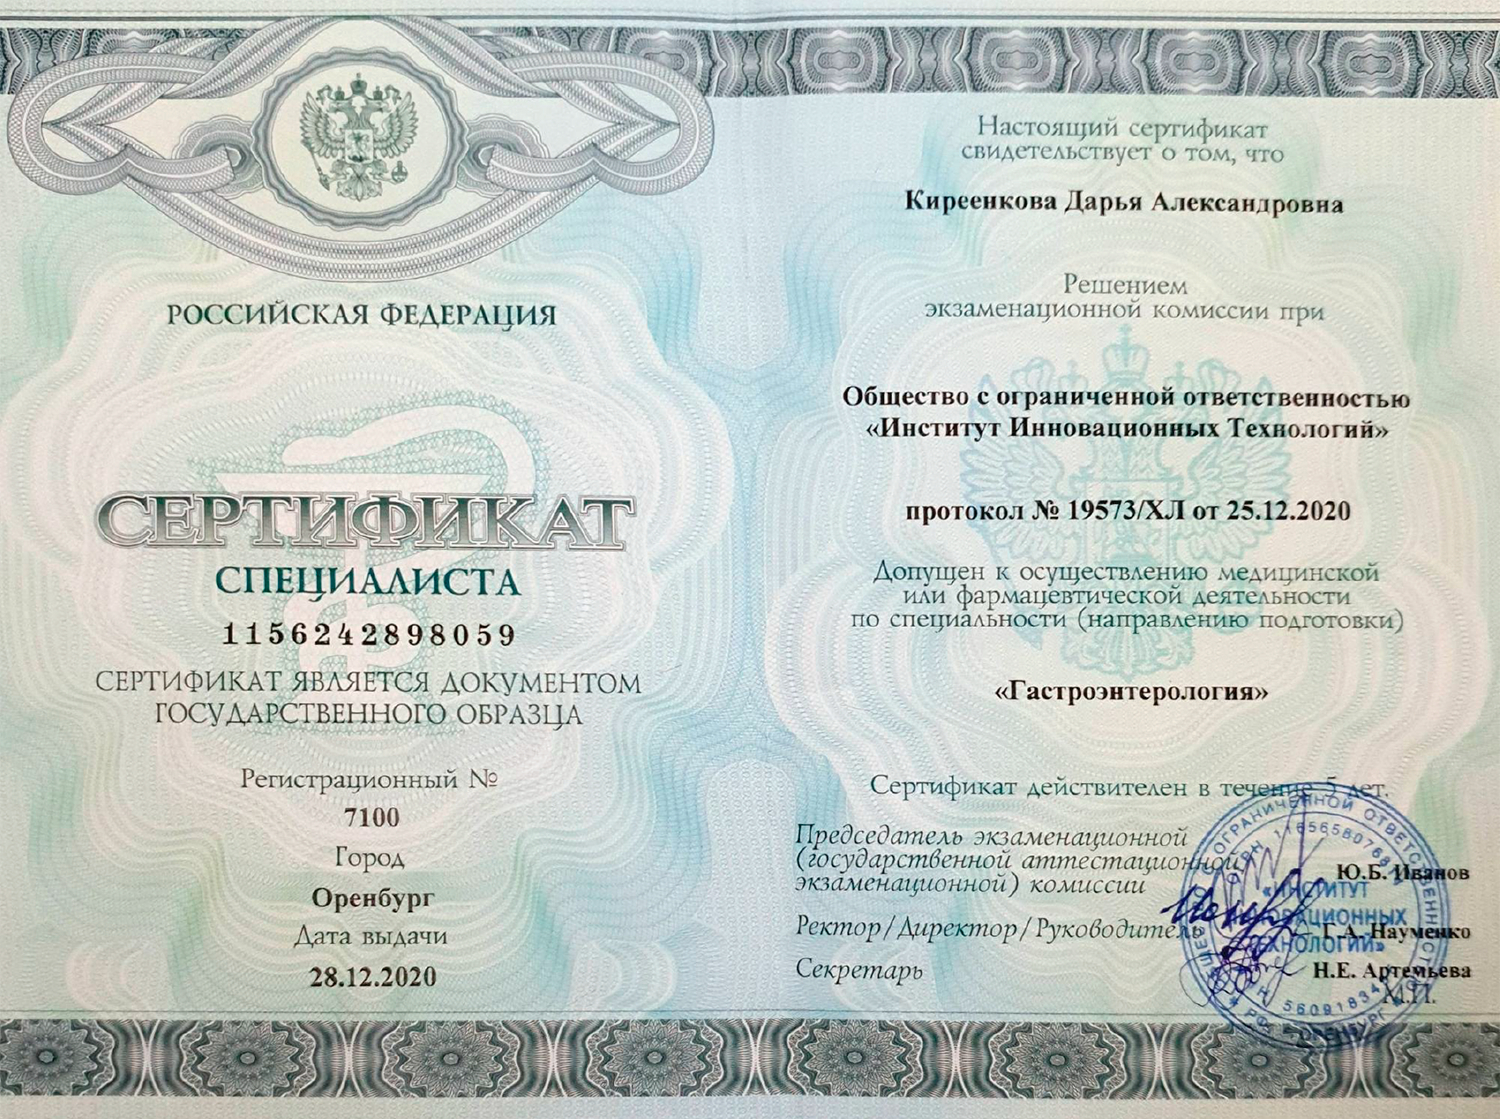 Сертификат 2020г.png